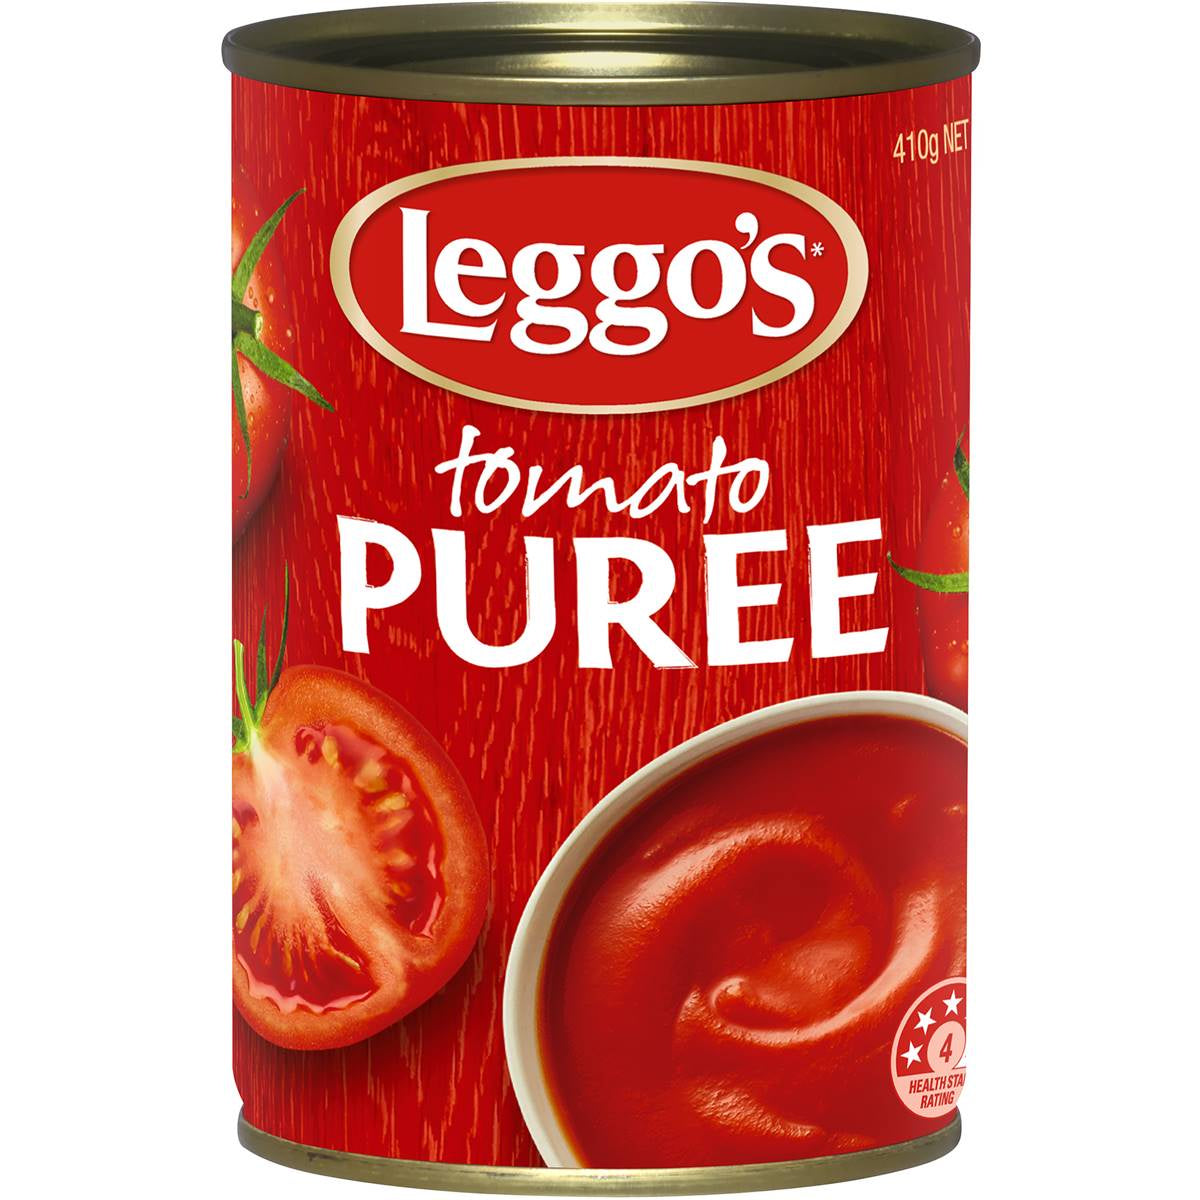 Leggo's Tomato Puree 410g